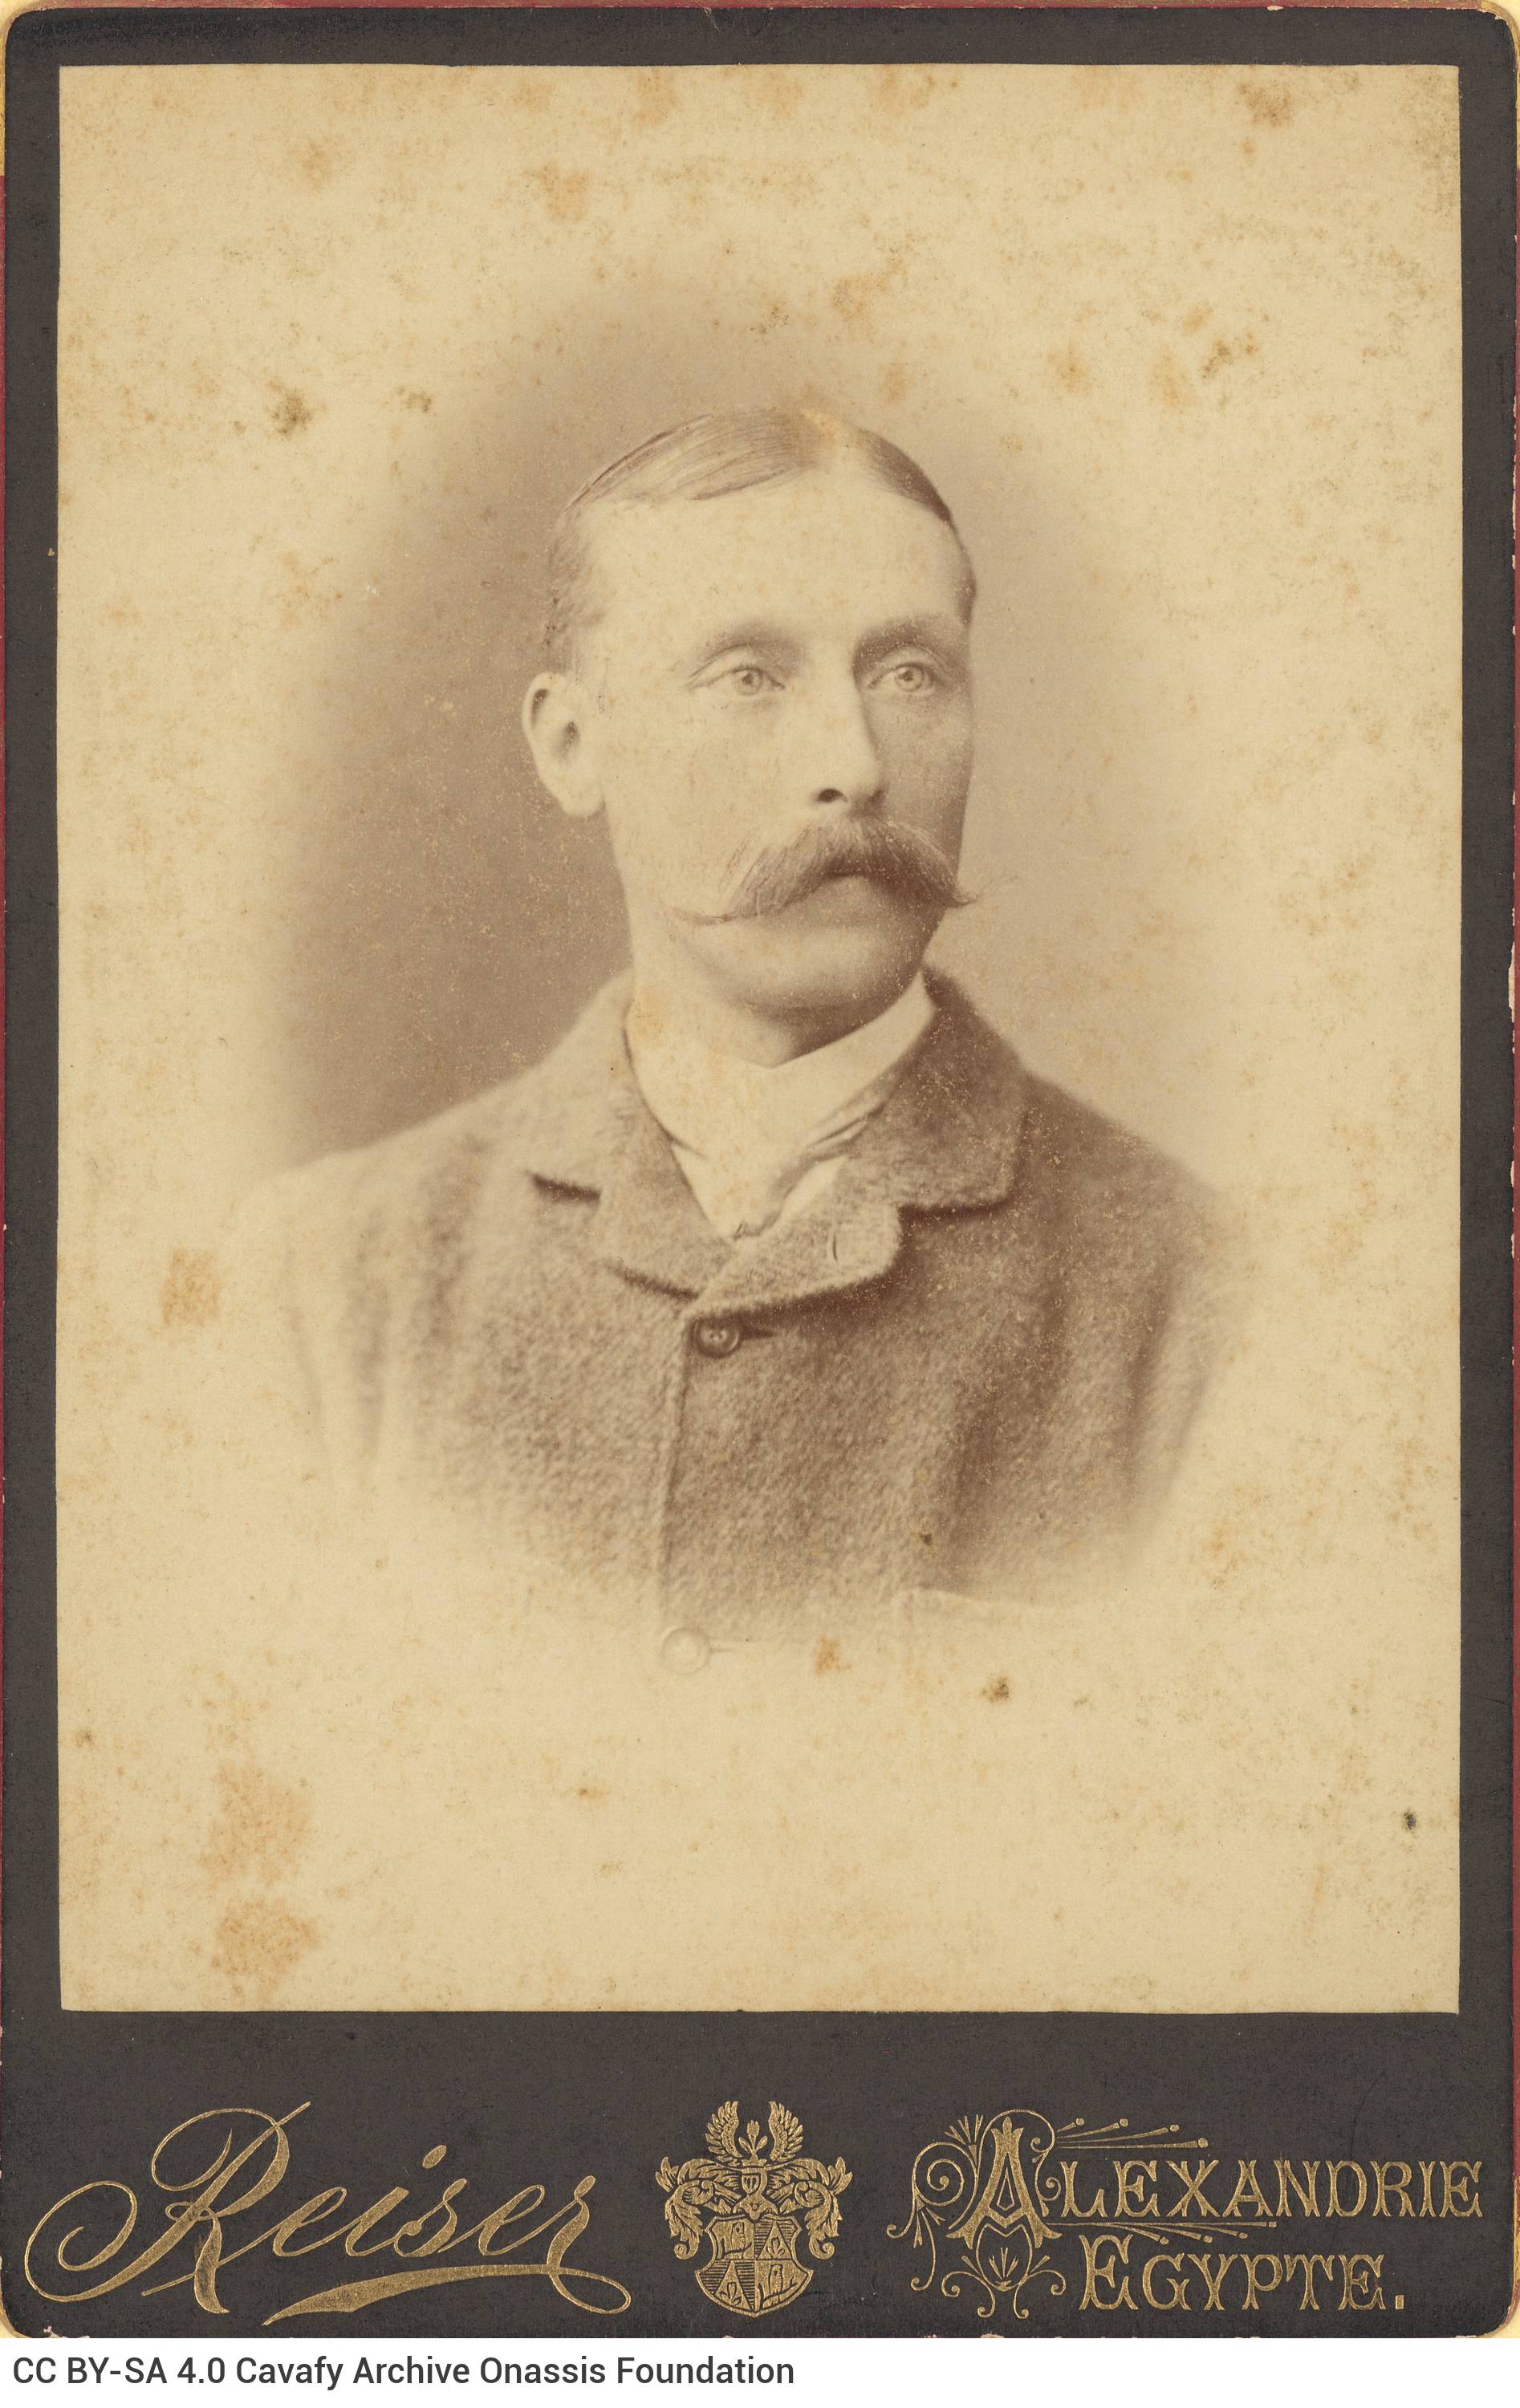 Αχρονολόγητη φωτογραφία άγνωστου άνδρα με μουστάκι. Ο λογότυπος του